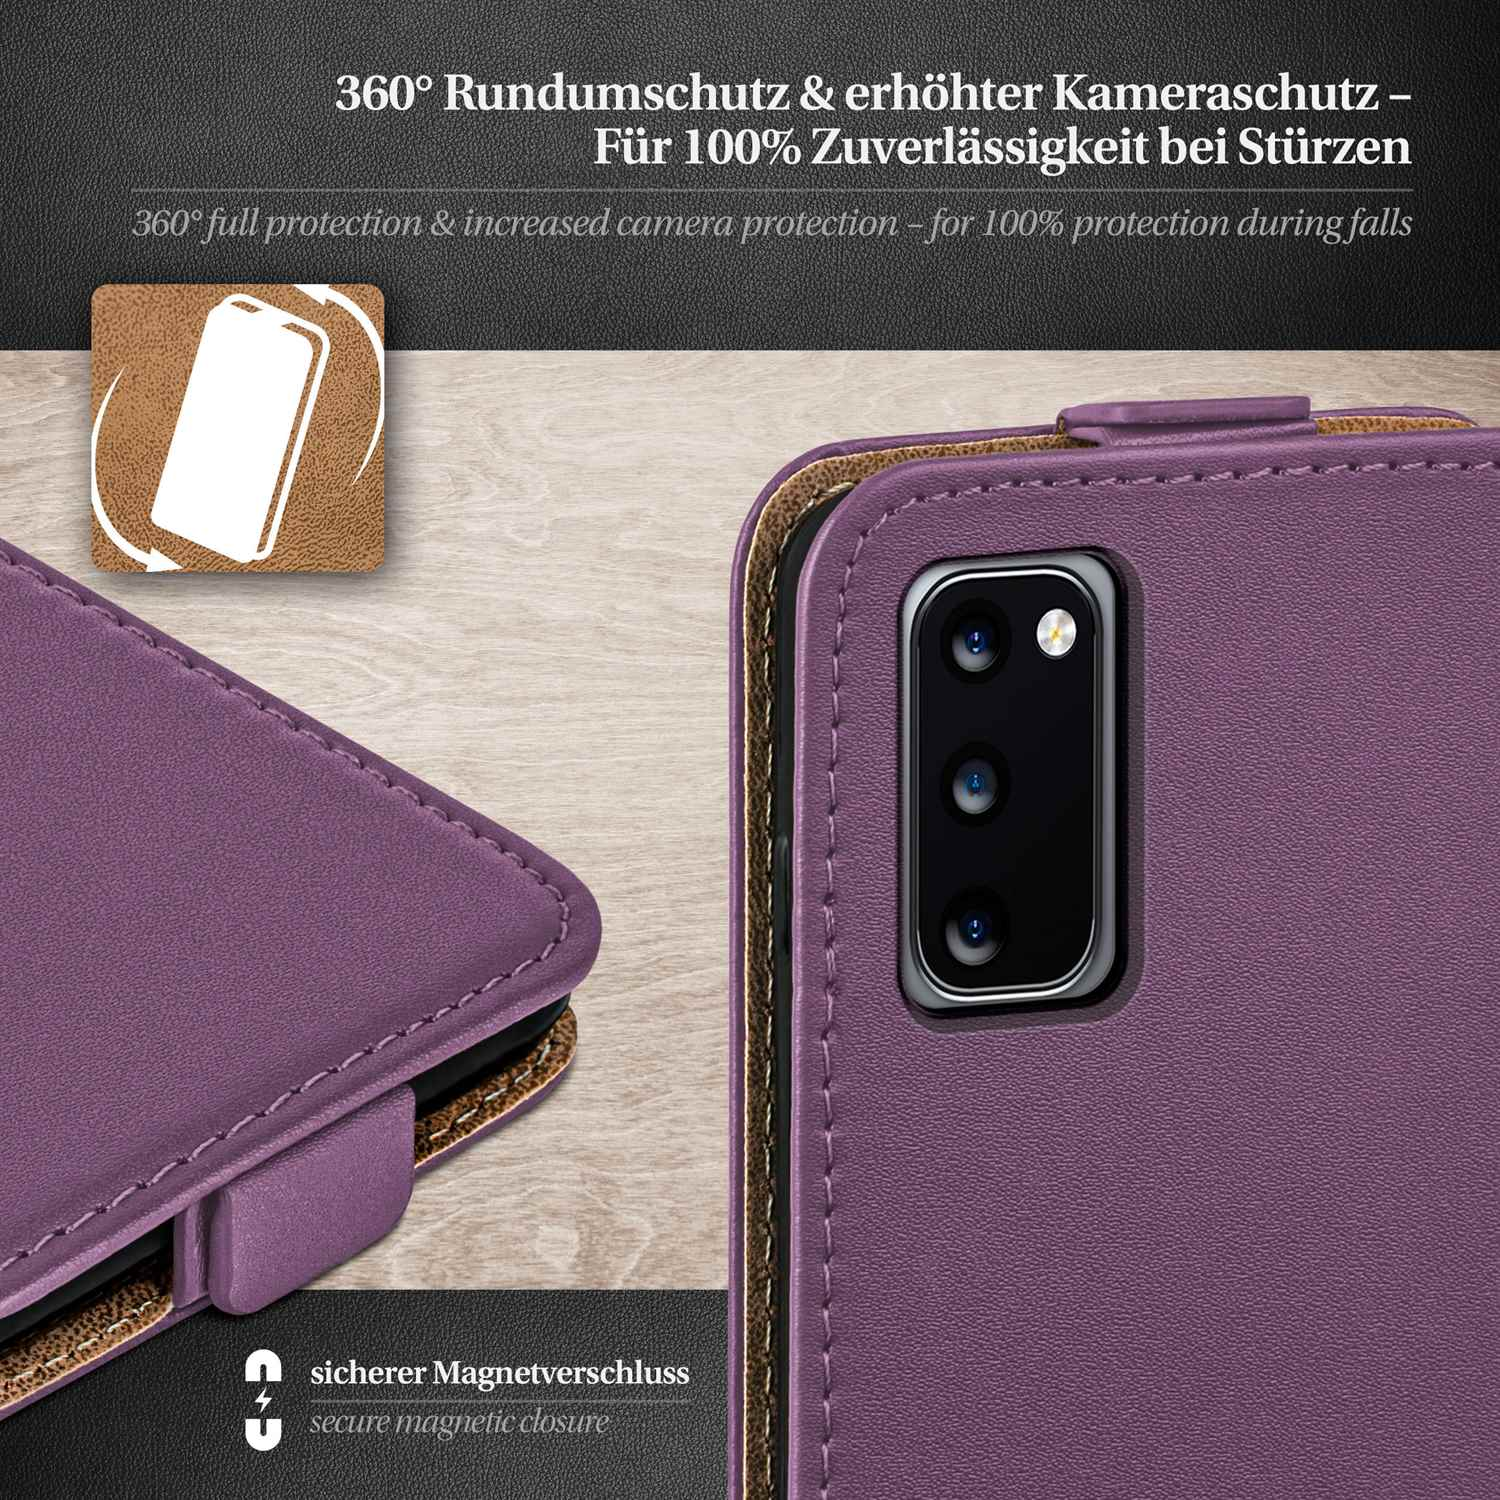 Galaxy Case, Flip Indigo-Violet Cover, 5G, MOEX S20 Samsung, Flip